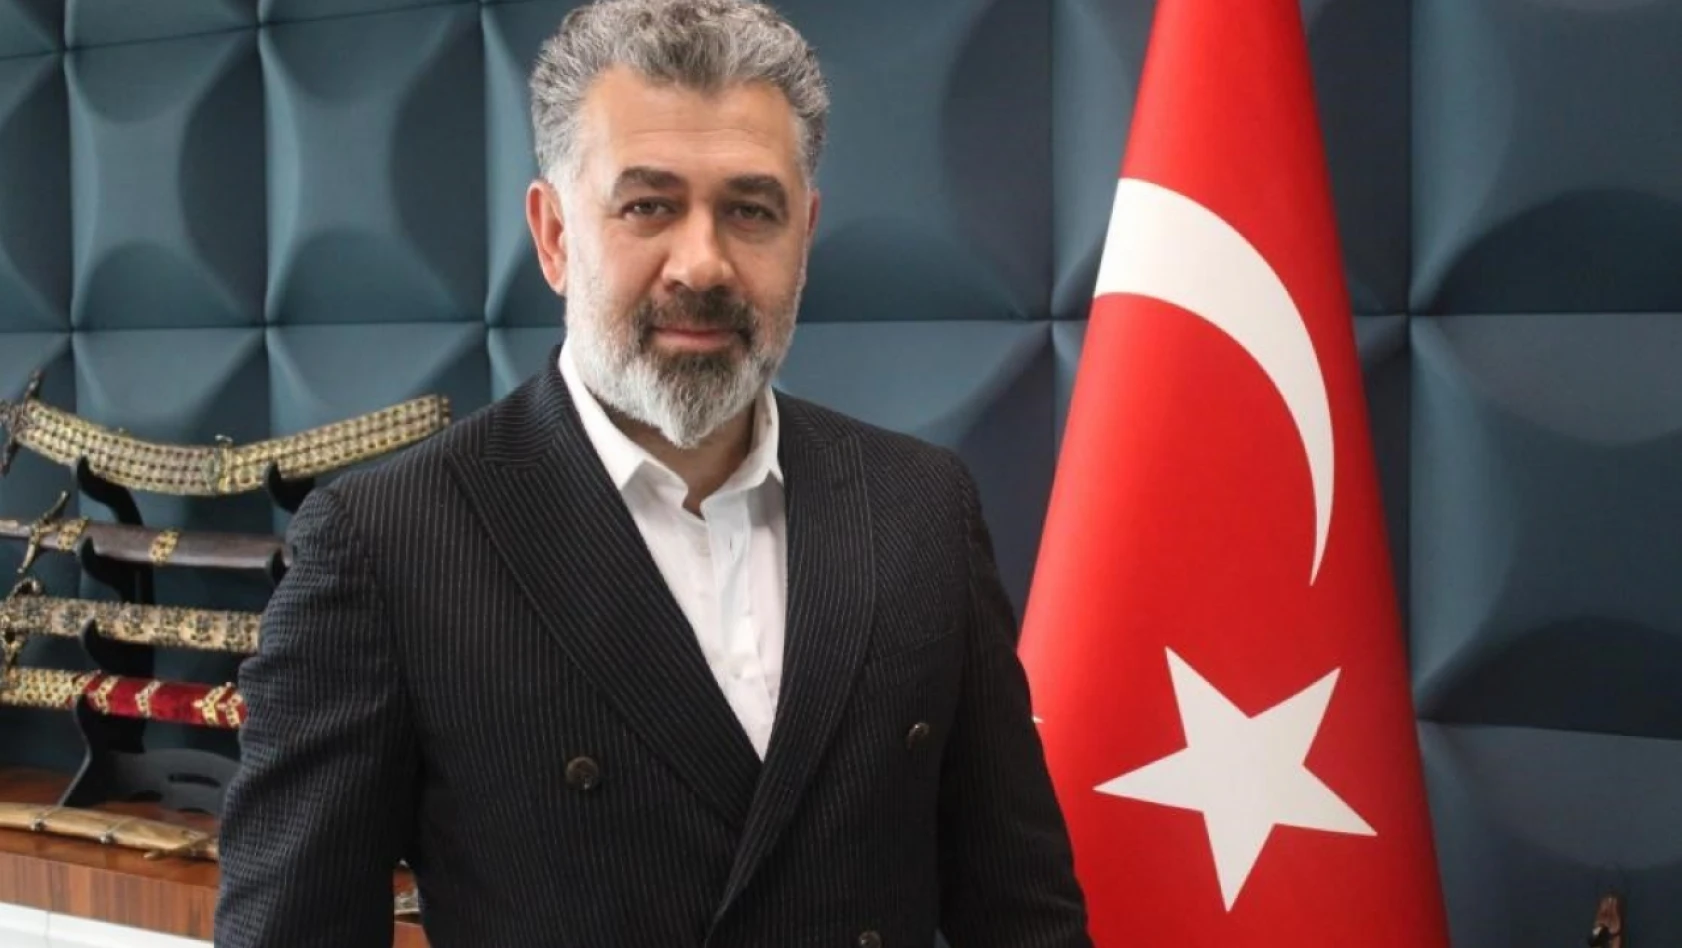 Sedat Kılınç, 16 ilçe ve 1 büyükşehiri almak için yola çıktıklarını söyledi